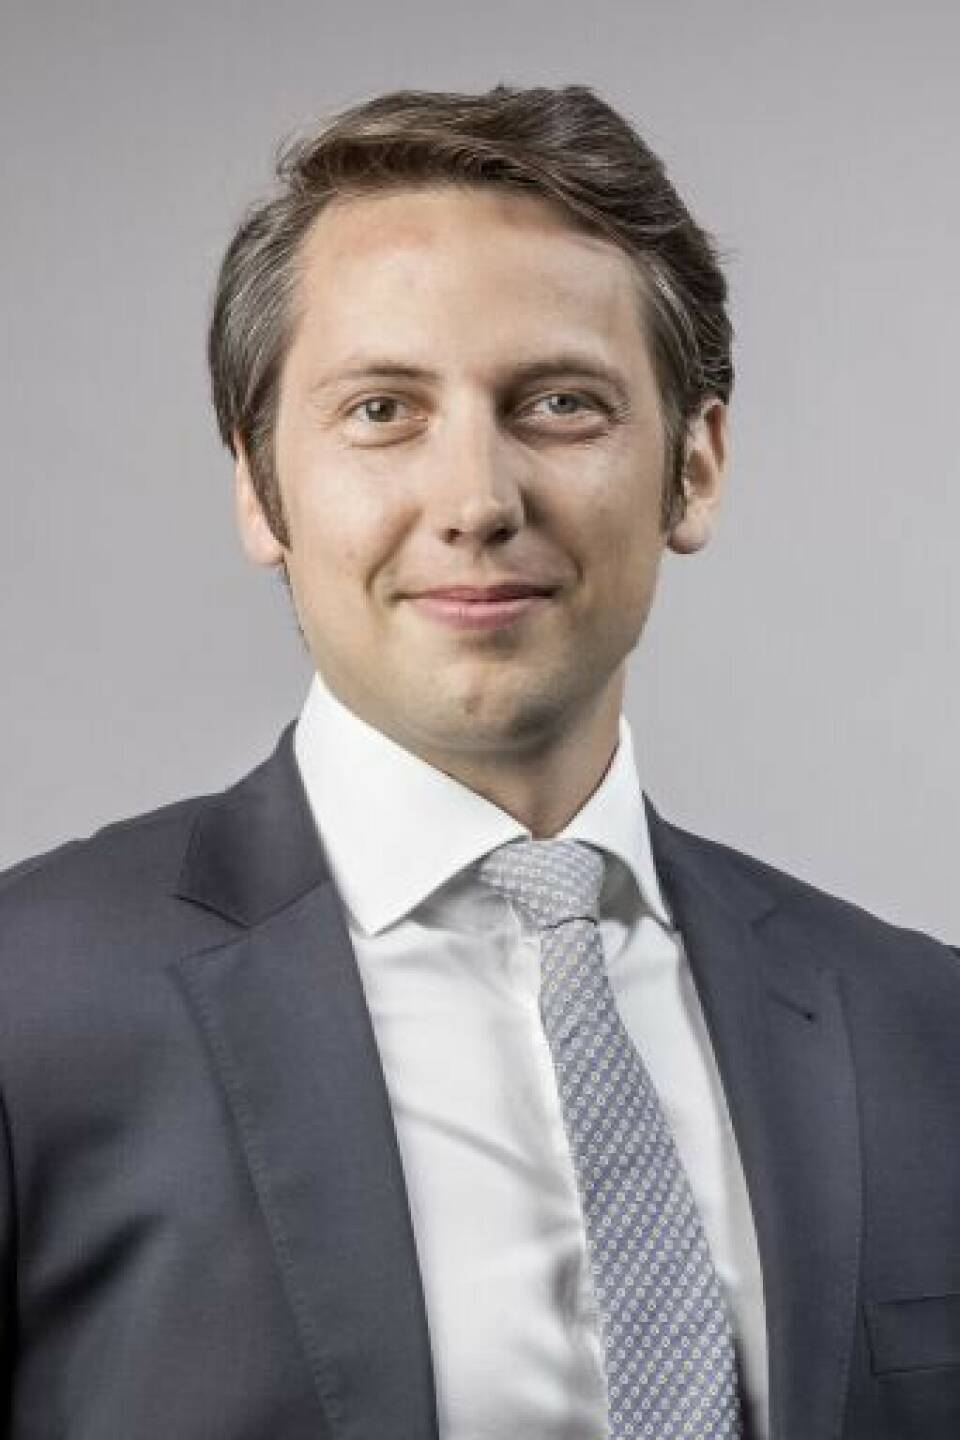 PwC: Zwei neue Partner verstärken Wirtschaftsprüfung, Marius Richter (36) startete seine PwC-Karriere 2007 zunächst am Standort in Düsseldorf, ehe er 2008 zu PwC Österreich wechselte. Credit: PwC